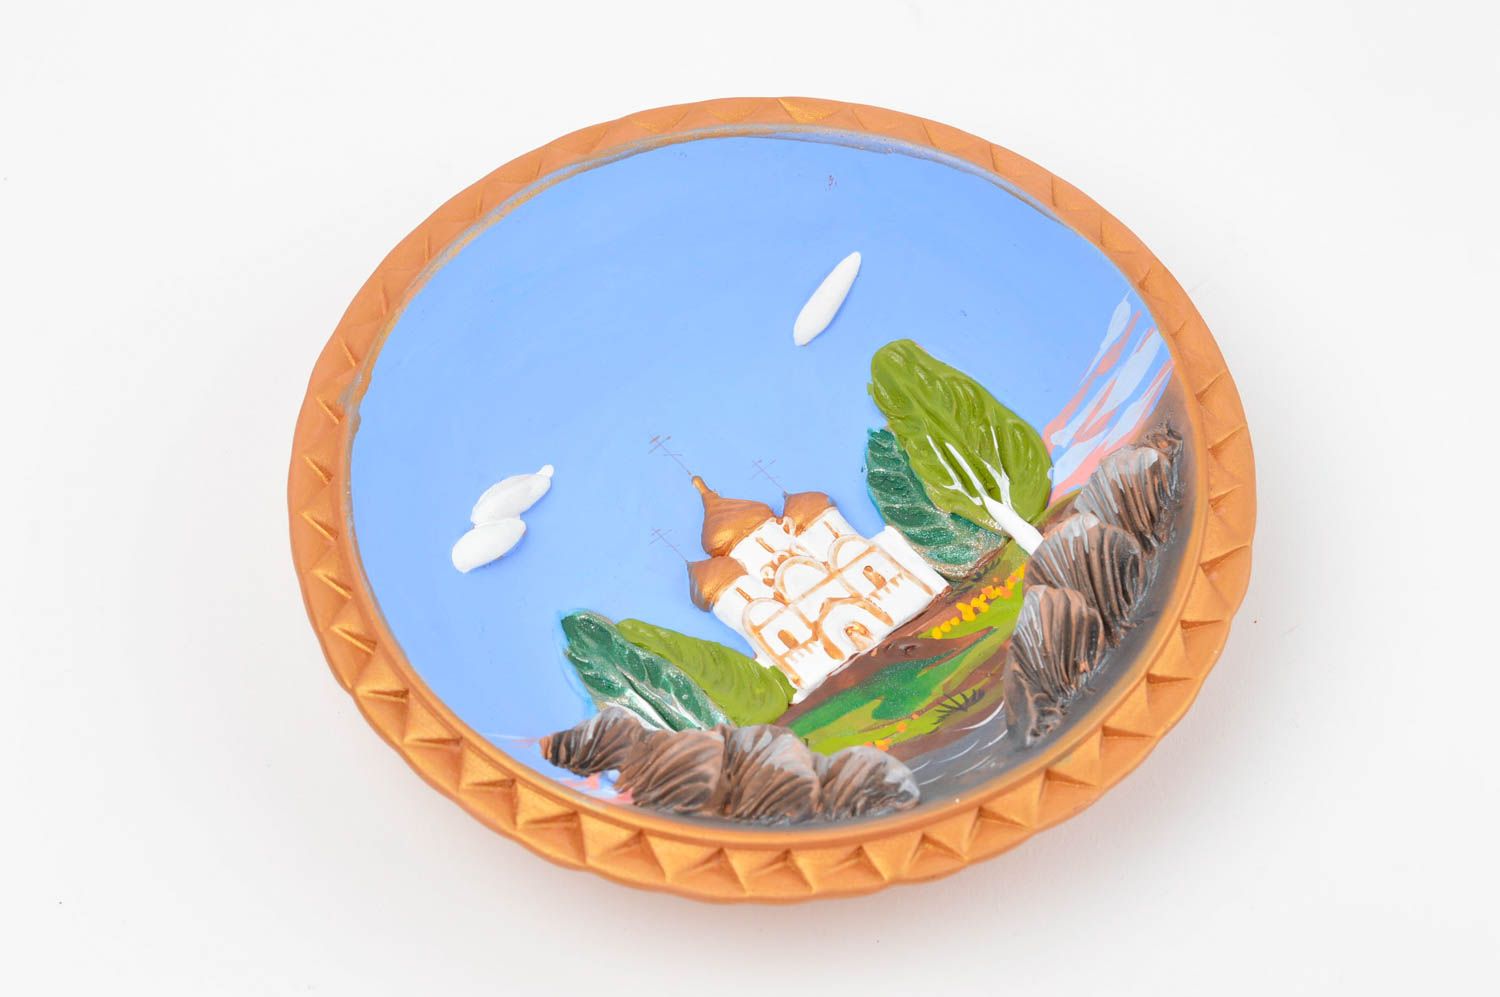 Тарелка из глины расписная декоративная красивая круглая ручной работы Лето фото 1